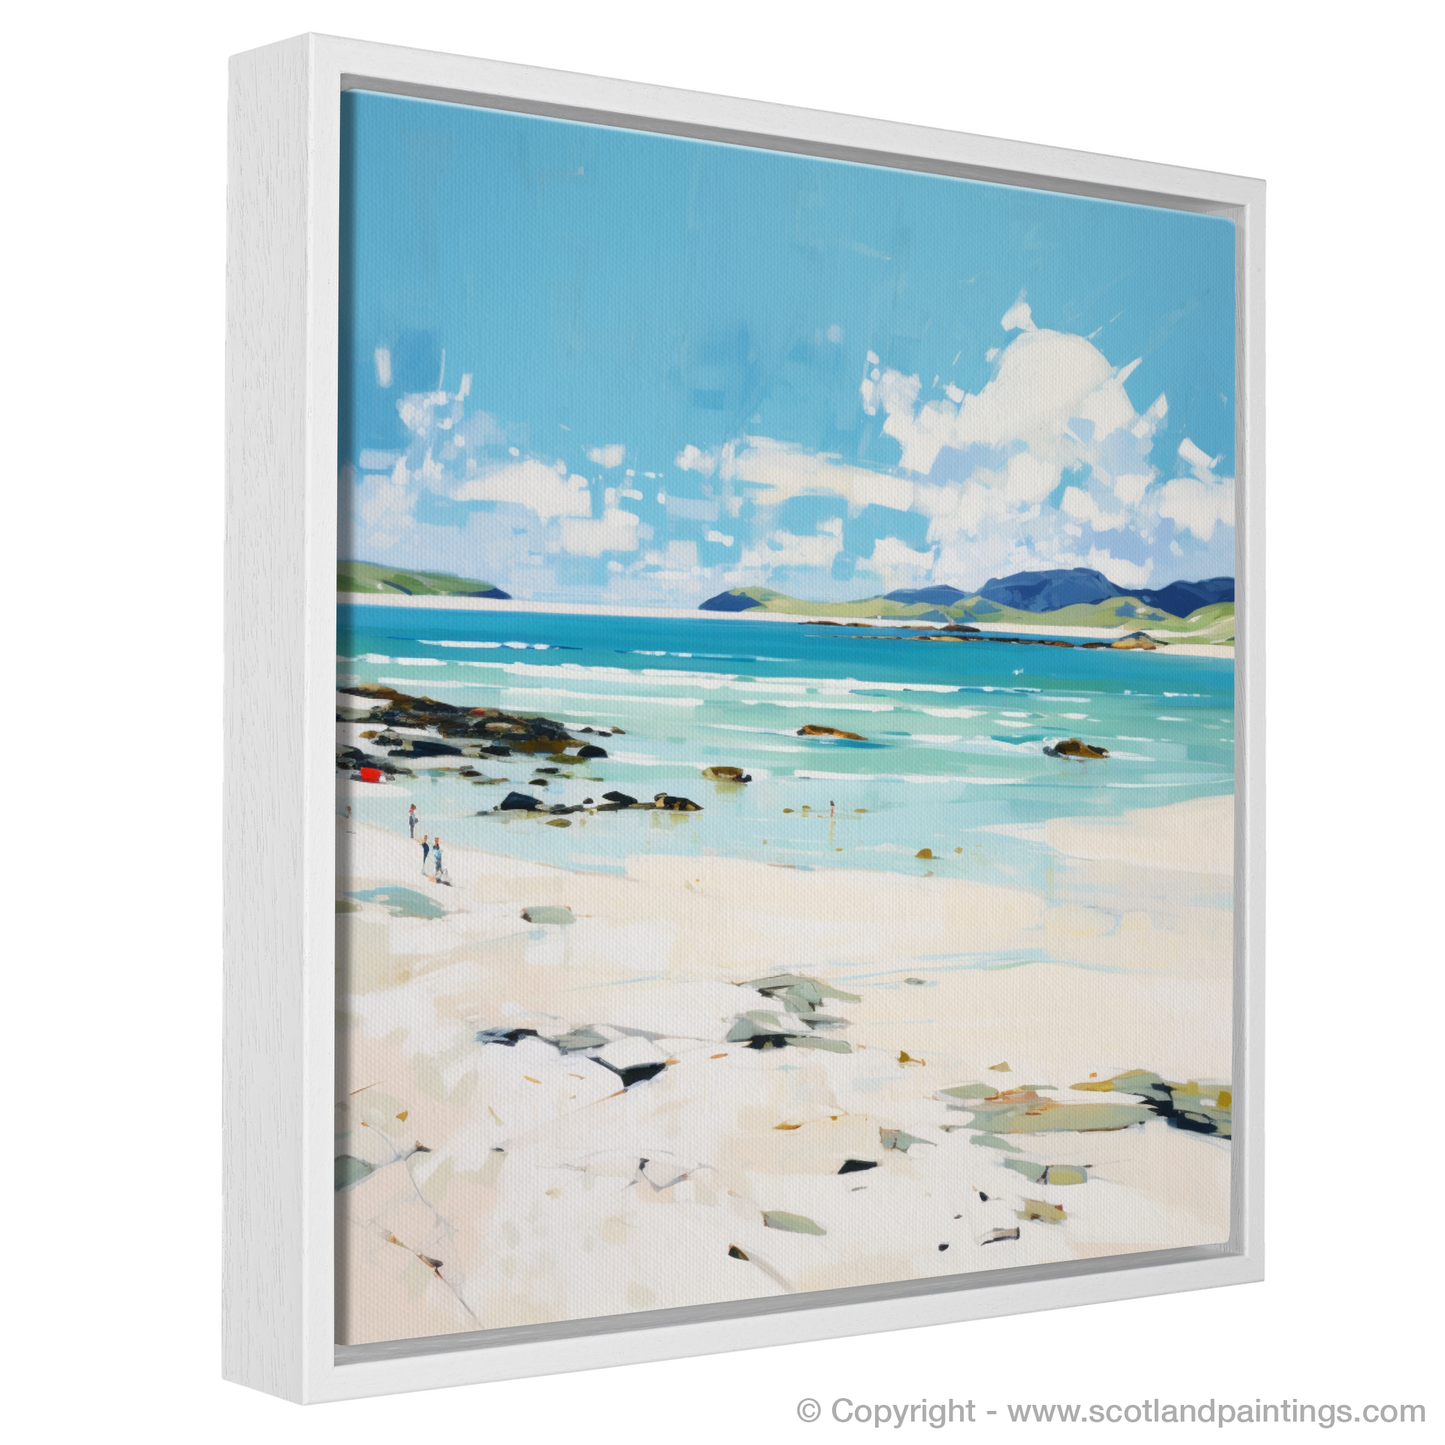 Painting and Art Print of Luskentyre Beach, Isle of Harris in summer entitled "Summer Serenity on Luskentyre Beach".